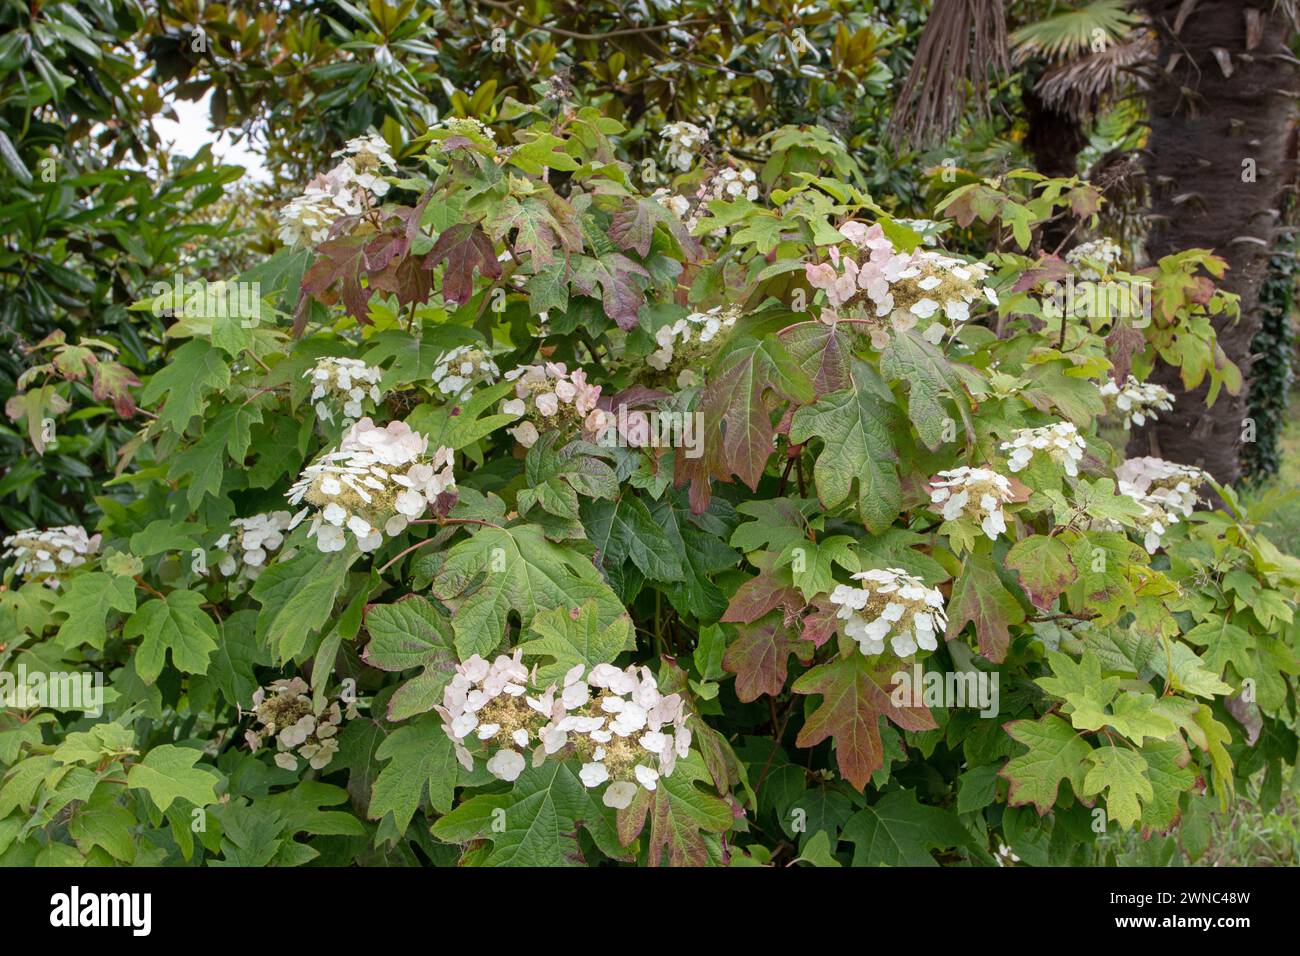 Eichenblatthortensie oder Hortensie quercifolia Pflanze mit weißen Blüten. Stockfoto